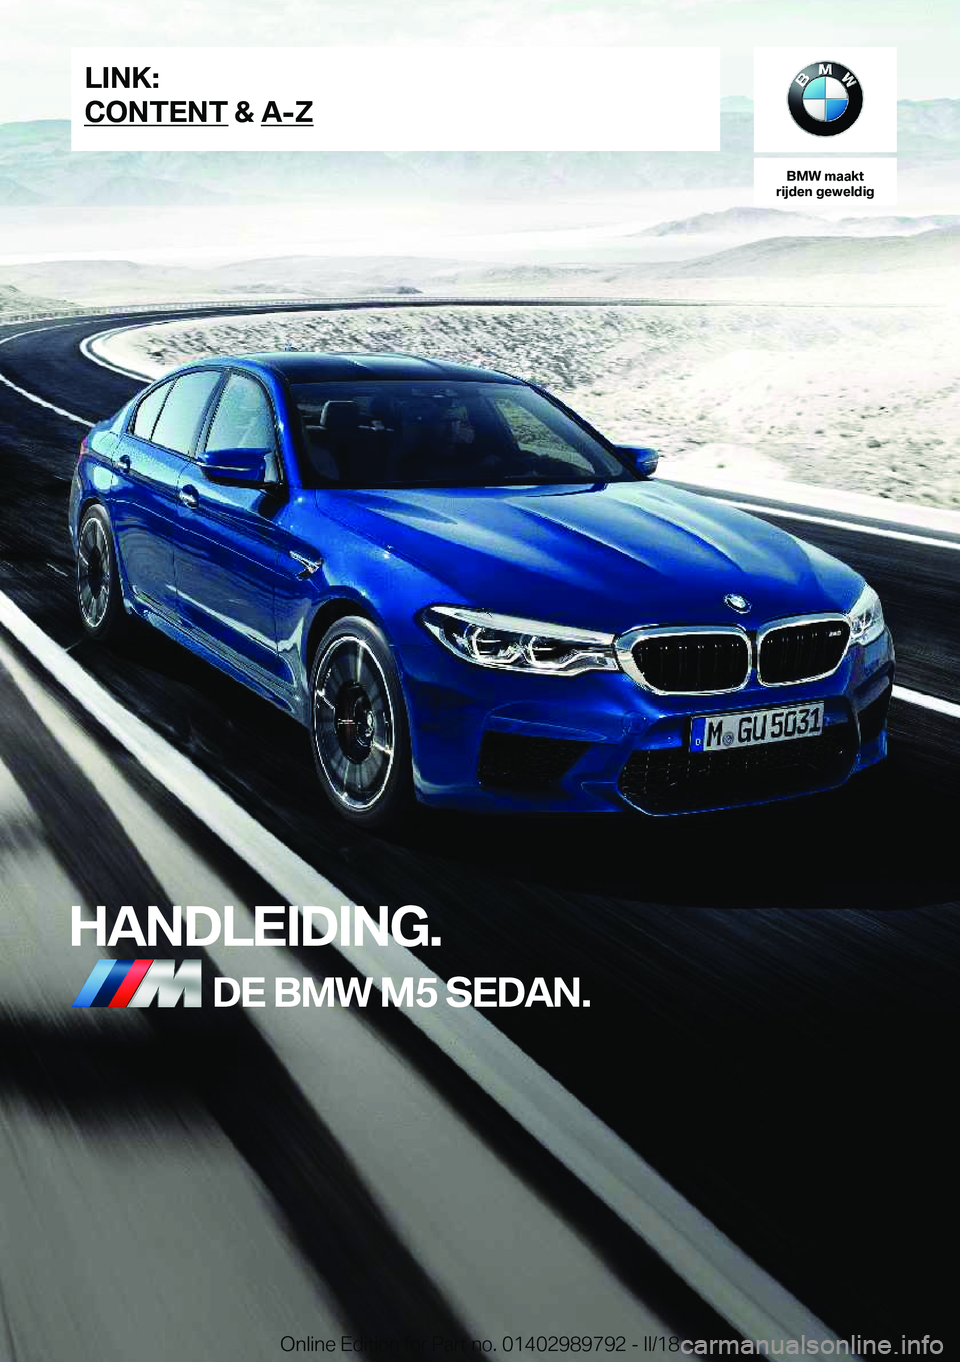 BMW M5 2018  Instructieboekjes (in Dutch) �B�M�W��m�a�a�k�t
�r�i�j�d�e�n��g�e�w�e�l�d�i�g
�H�A�N�D�L�E�I�D�I�N�G�.�D�E��B�M�W��M�5��S�E�D�A�N�.�L�I�N�K�:
�C�O�N�T�E�N�T��&��A�-�Z�O�n�l�i�n�e� �E�d�i�t�i�o�n� �f�o�r� �P�a�r�t� �n�o�.� �